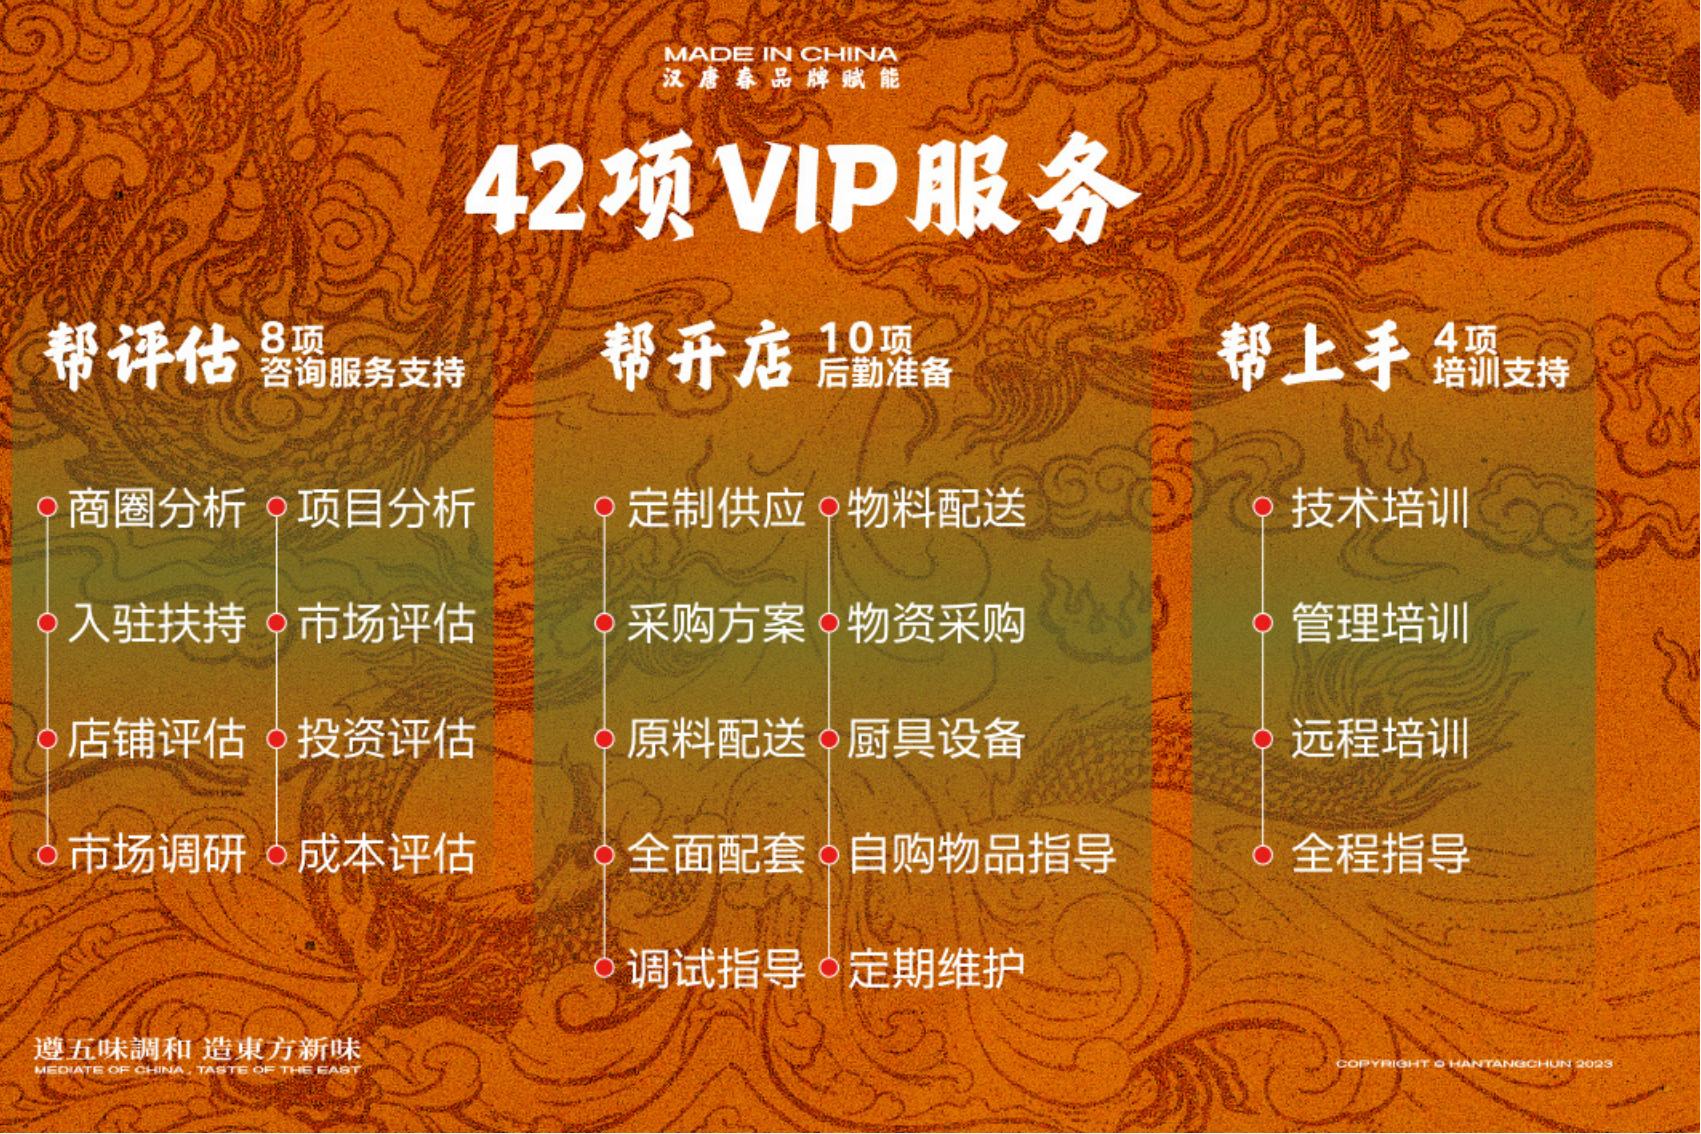 中国汉堡为加盟代理商提供42项VIP服务